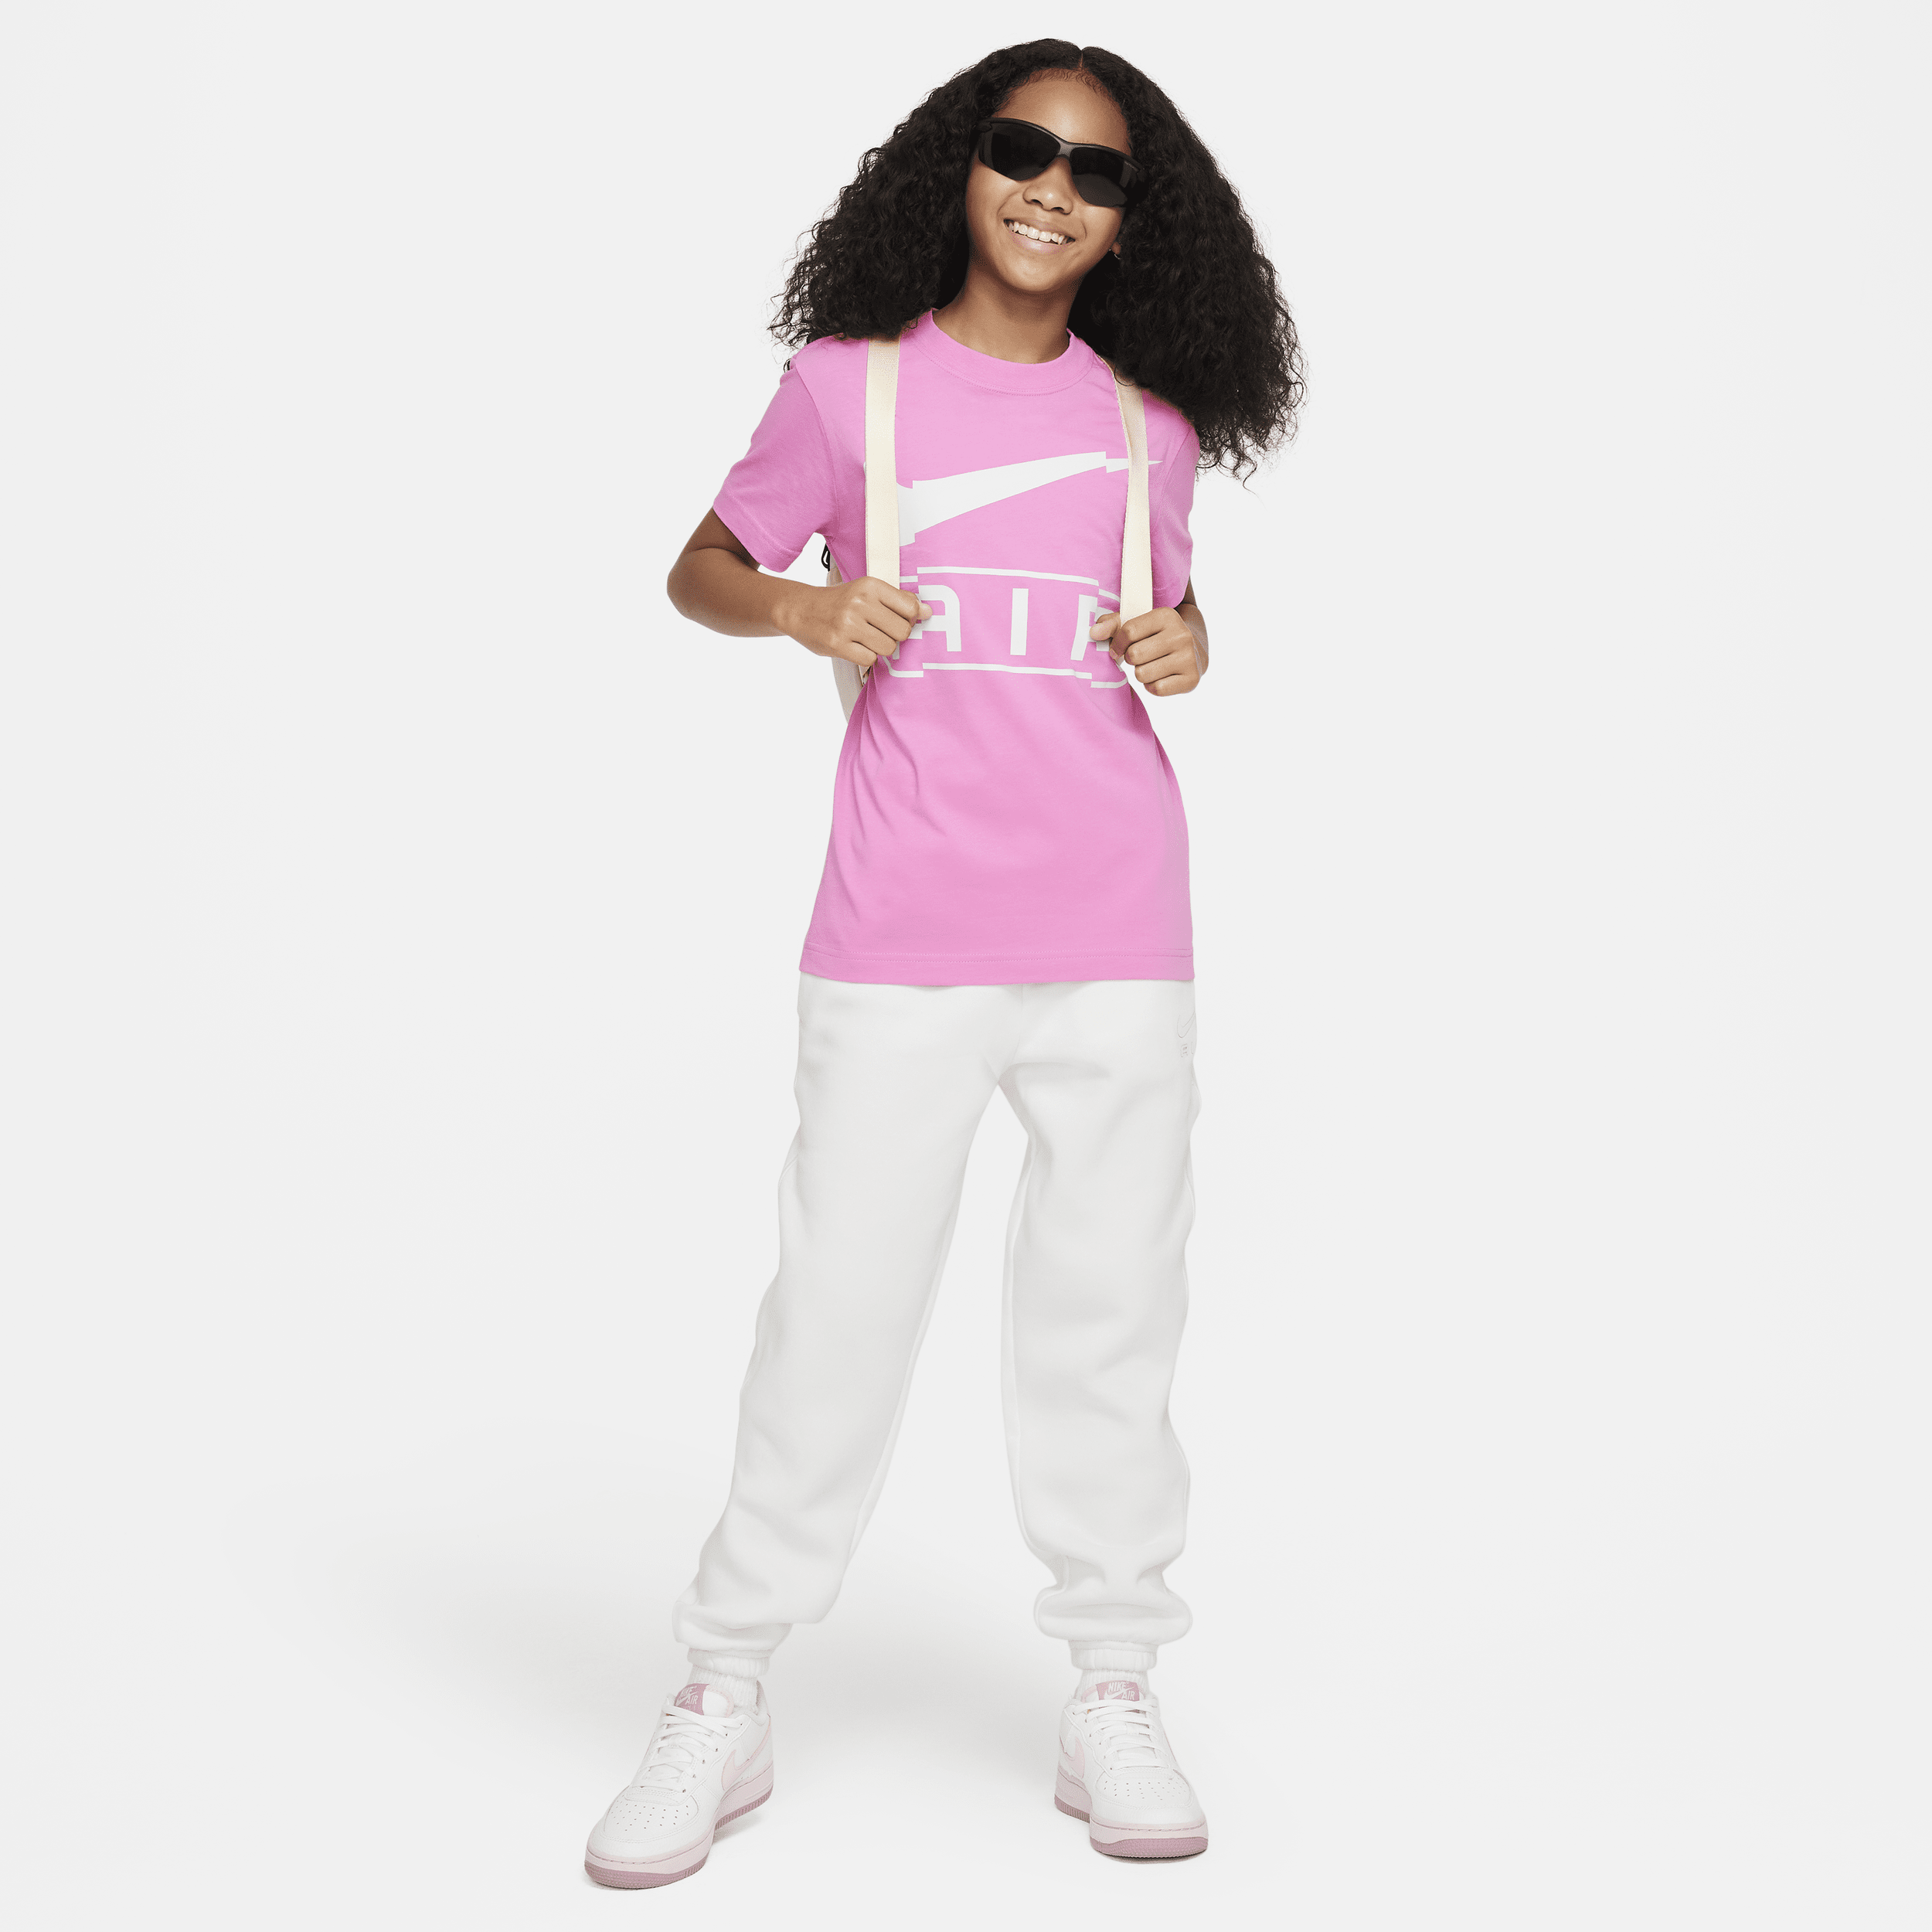 Nike Sportswear T-shirt voor meisjes Roze